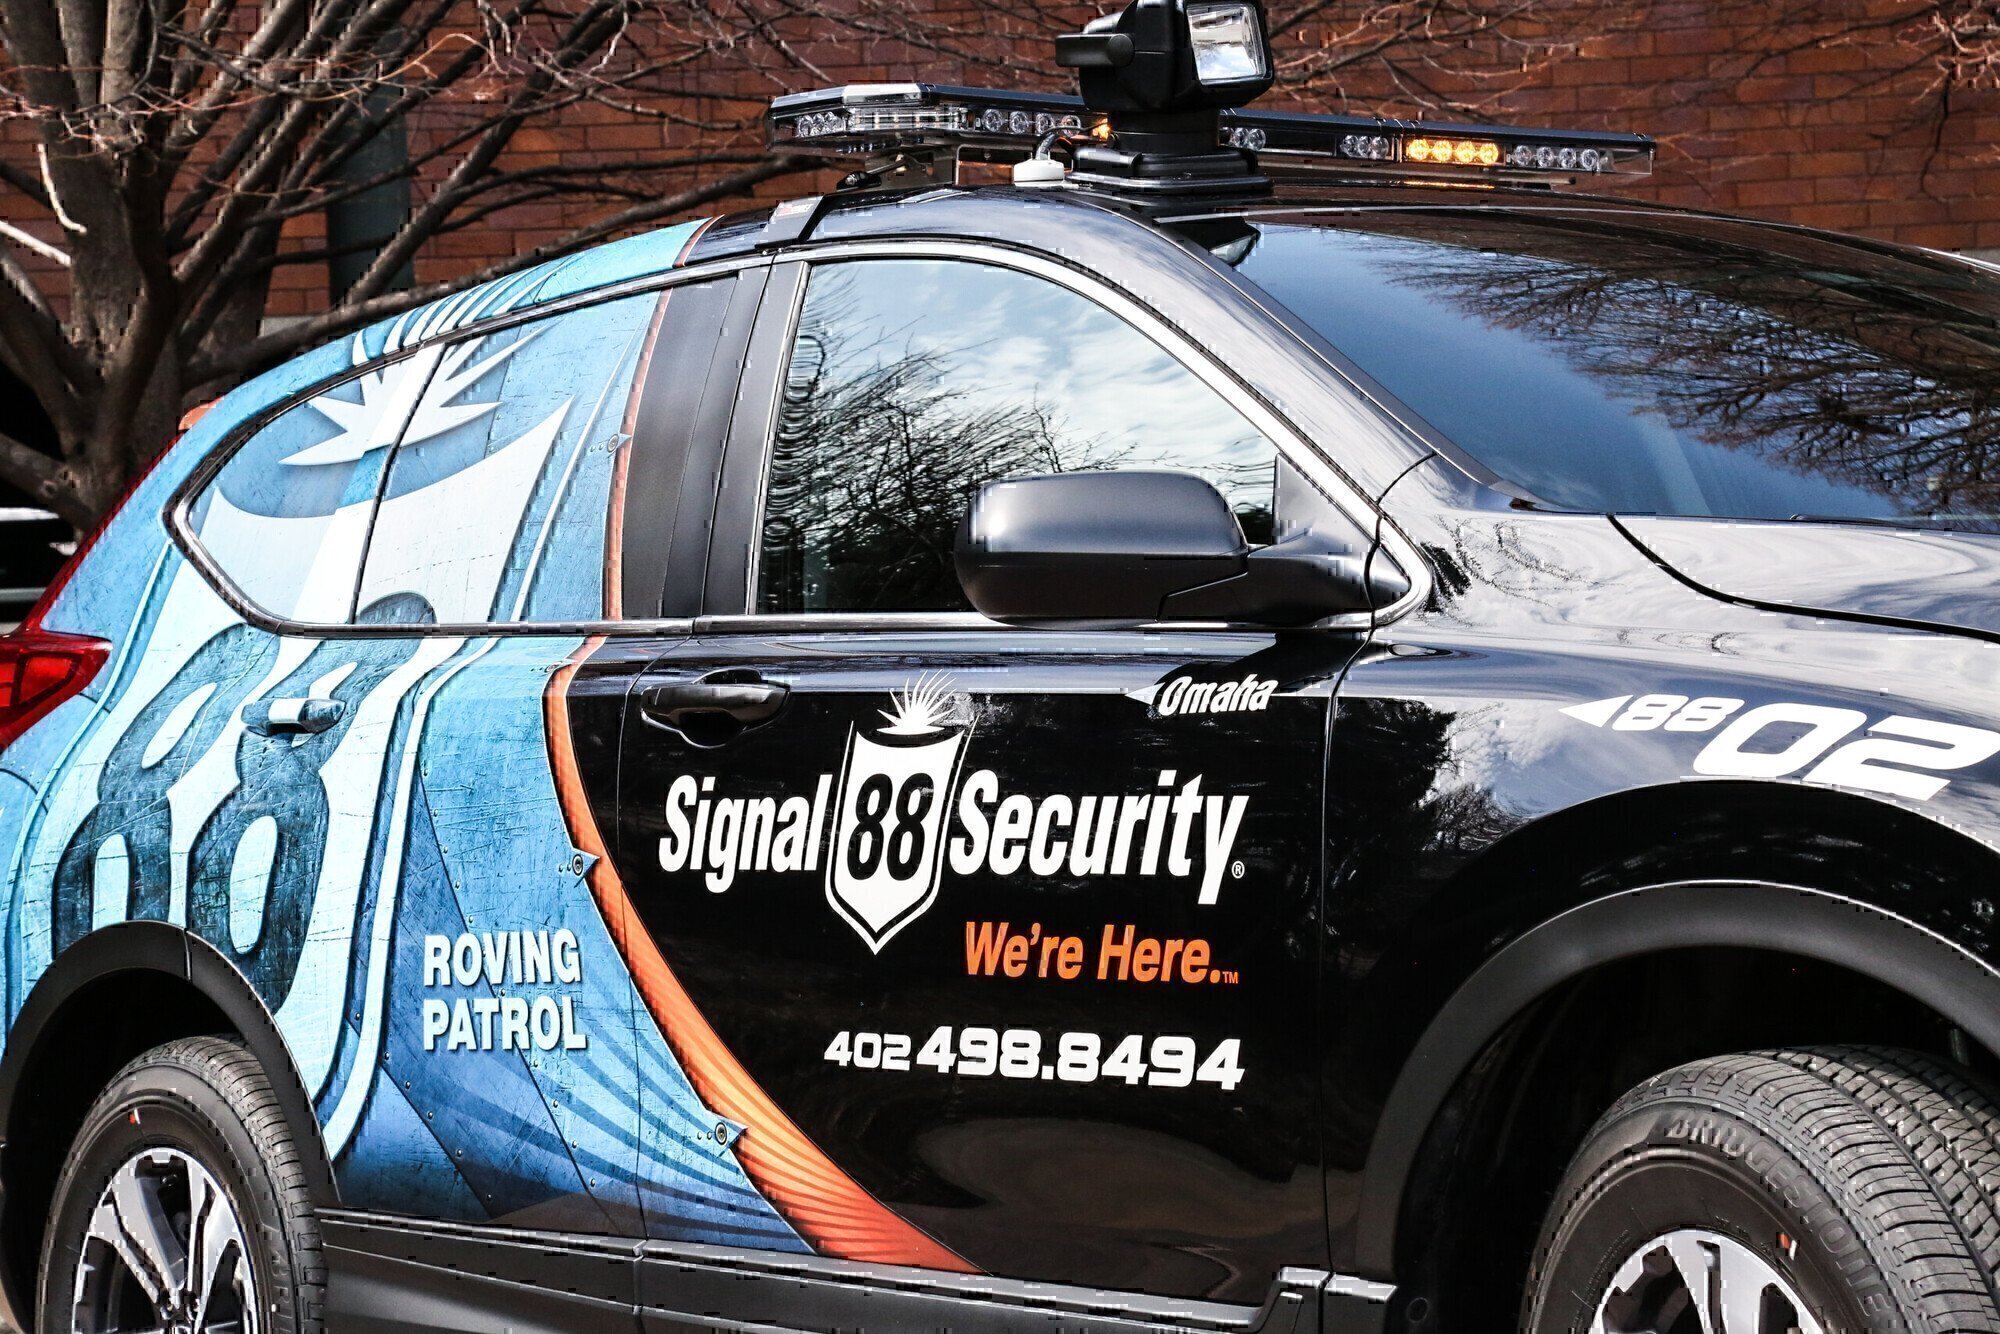 signal 88 security